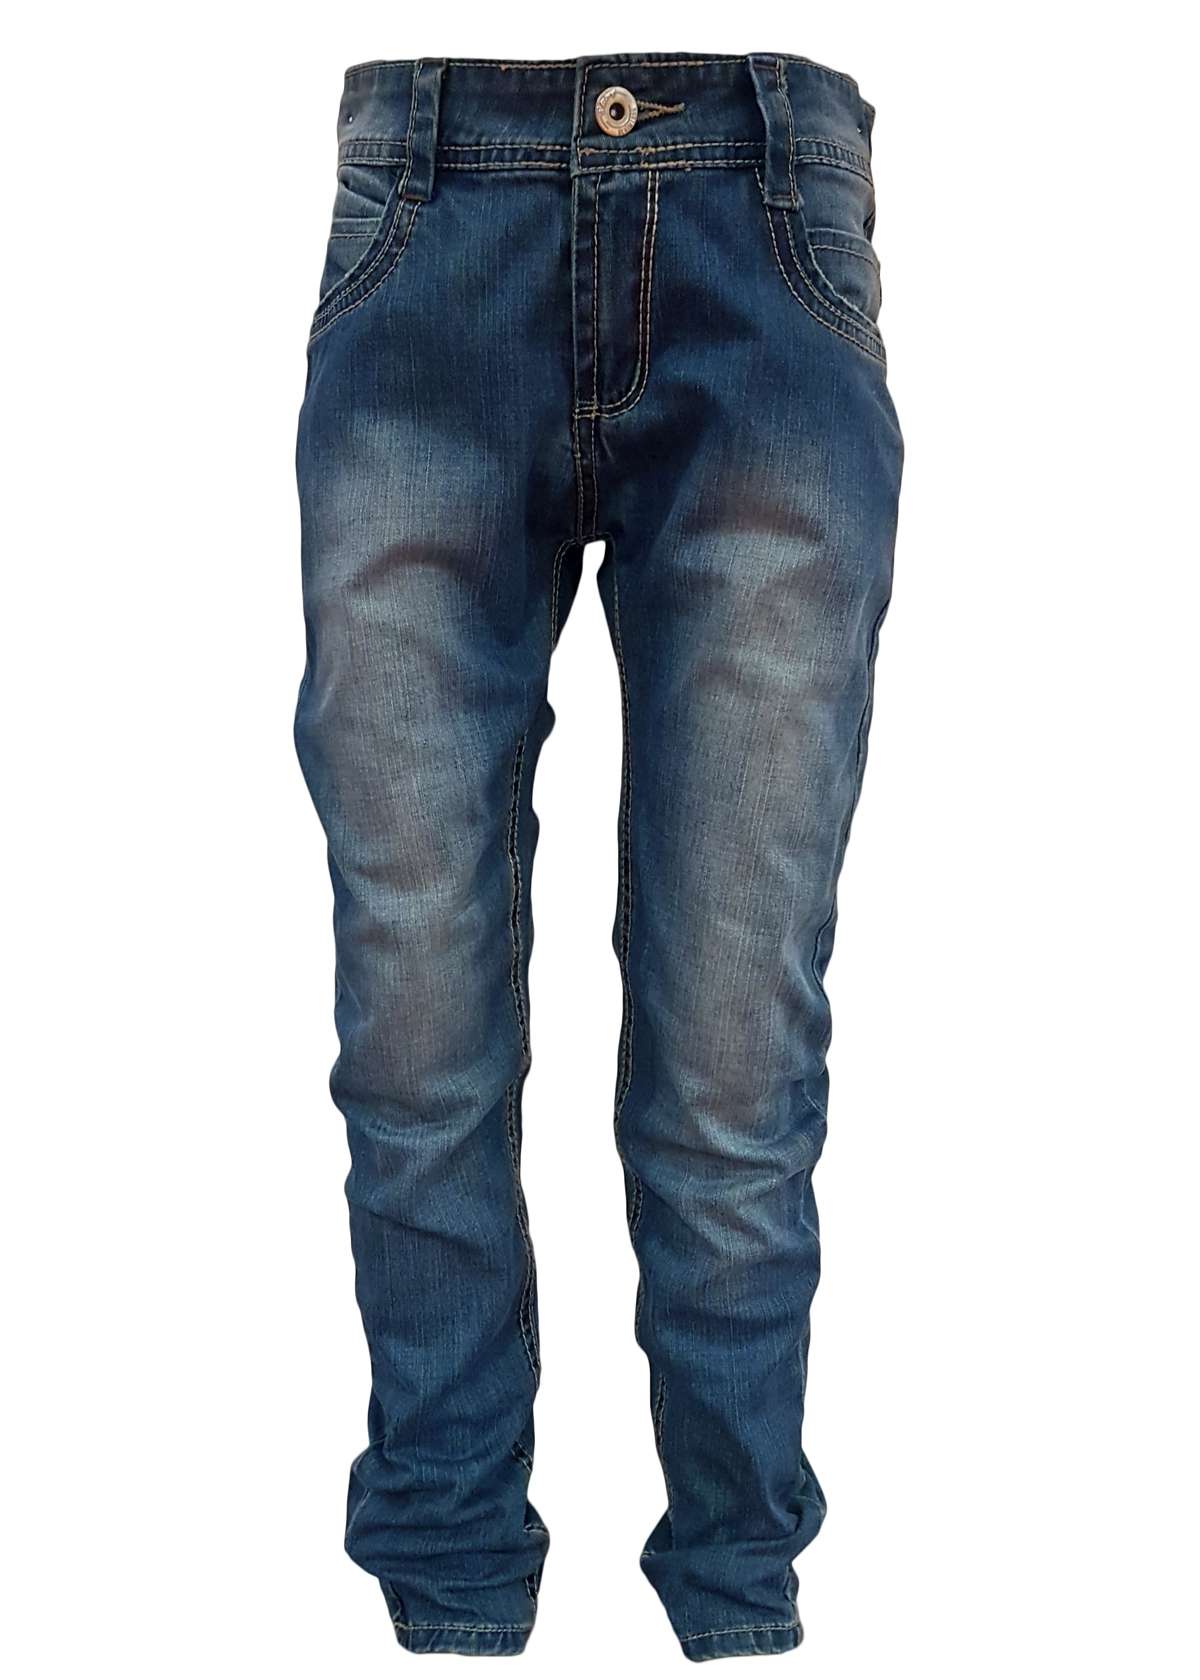 Удобные джинсы с эластичным поясом.